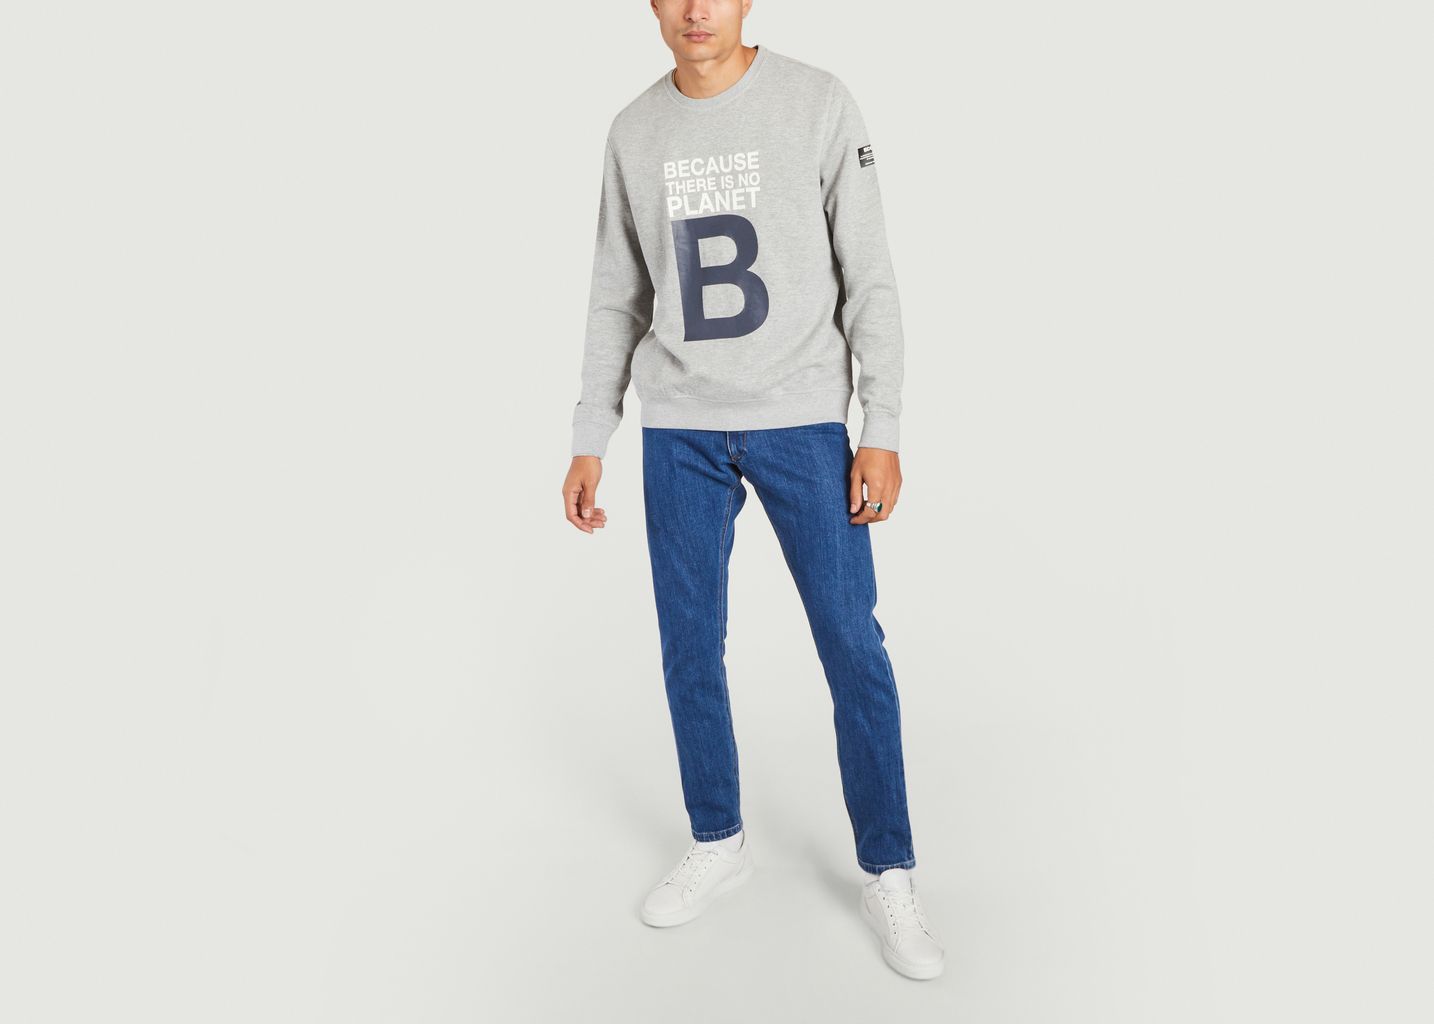 Sweatshirt mit großem B-Schriftzug - Ecoalf